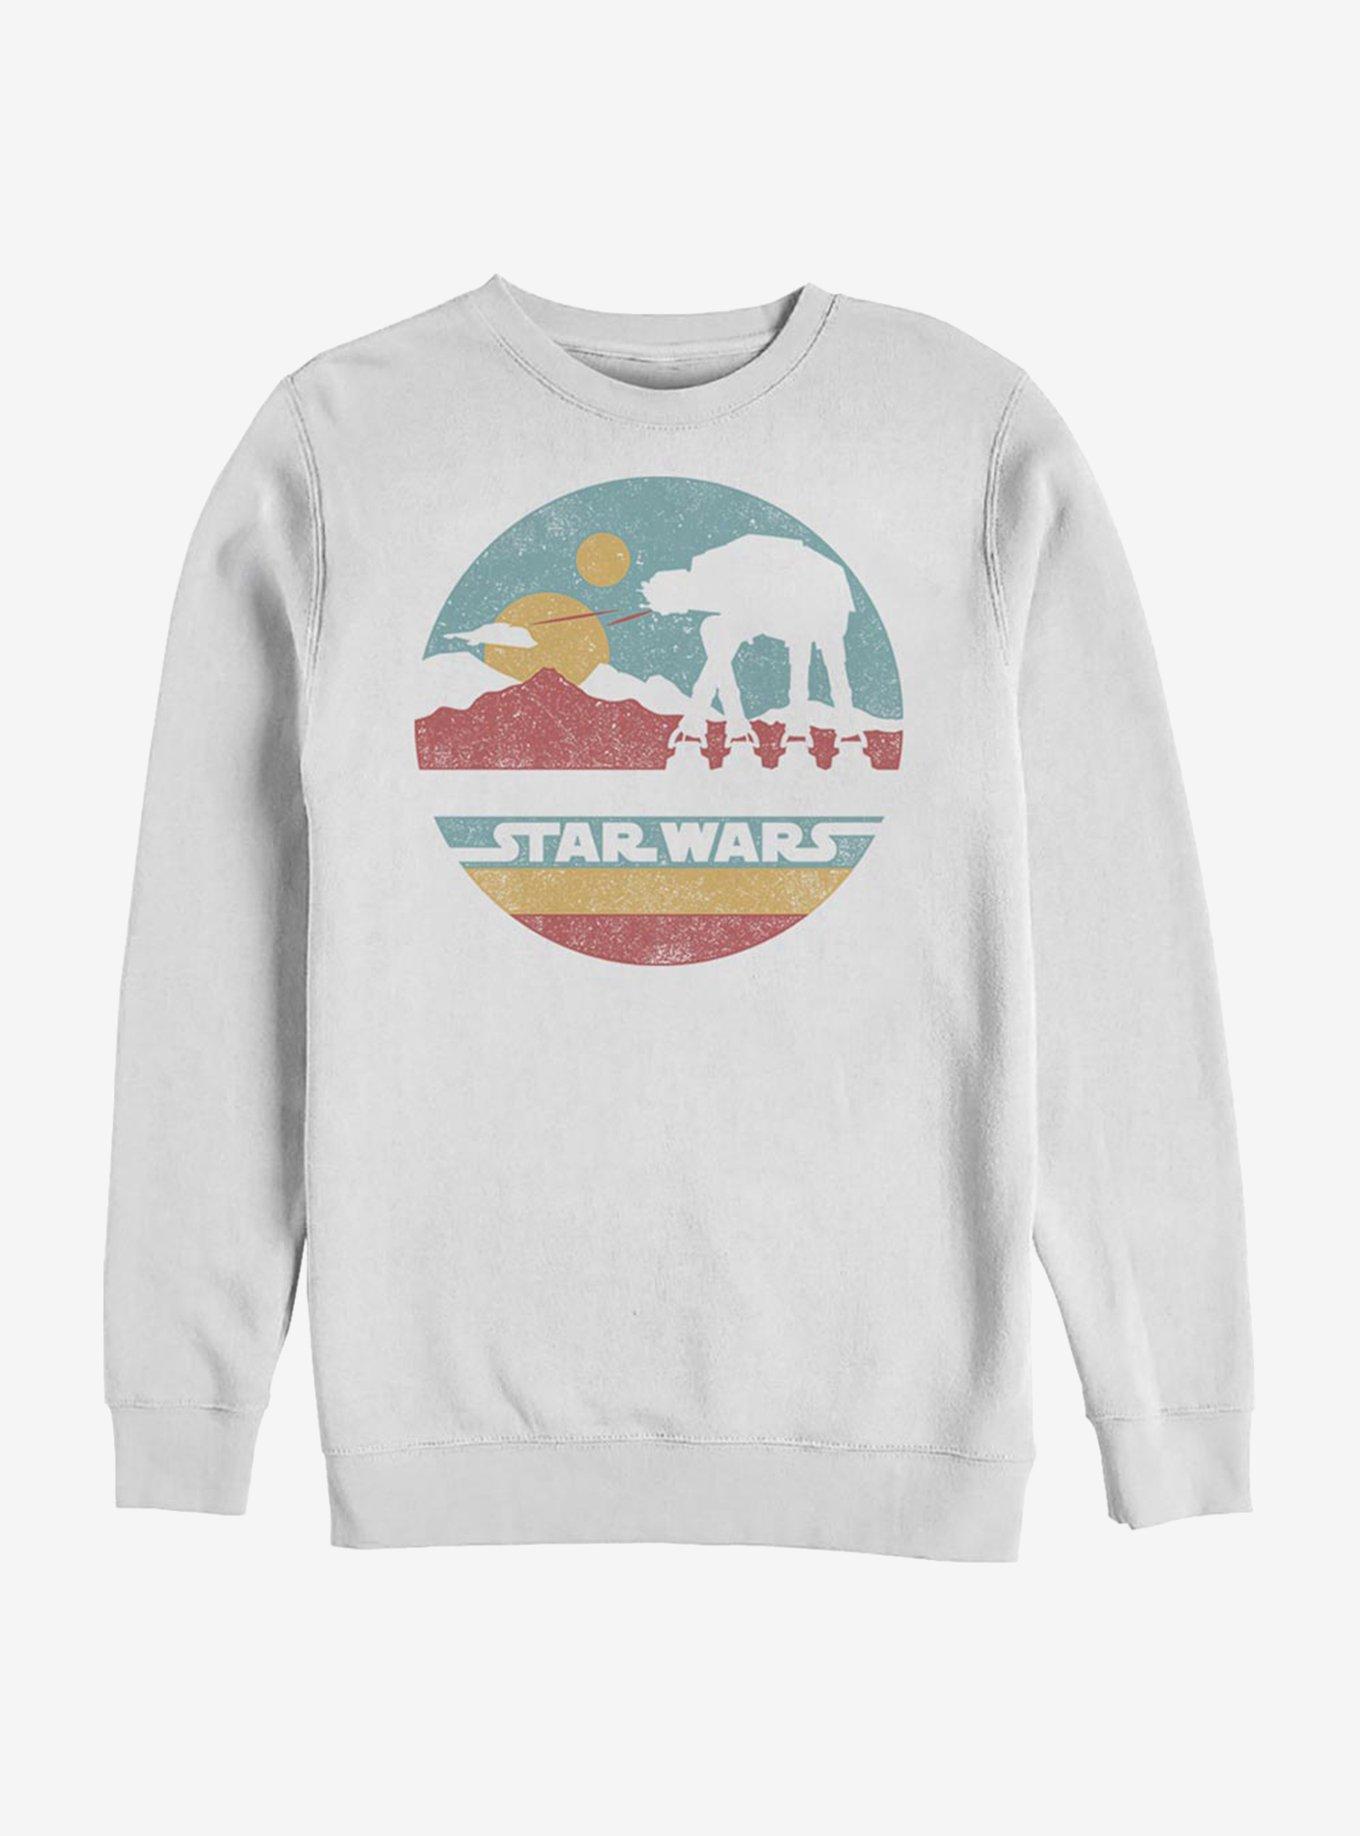 Star Wars AT-AT Mountain Sweatshirt, WHITE, hi-res